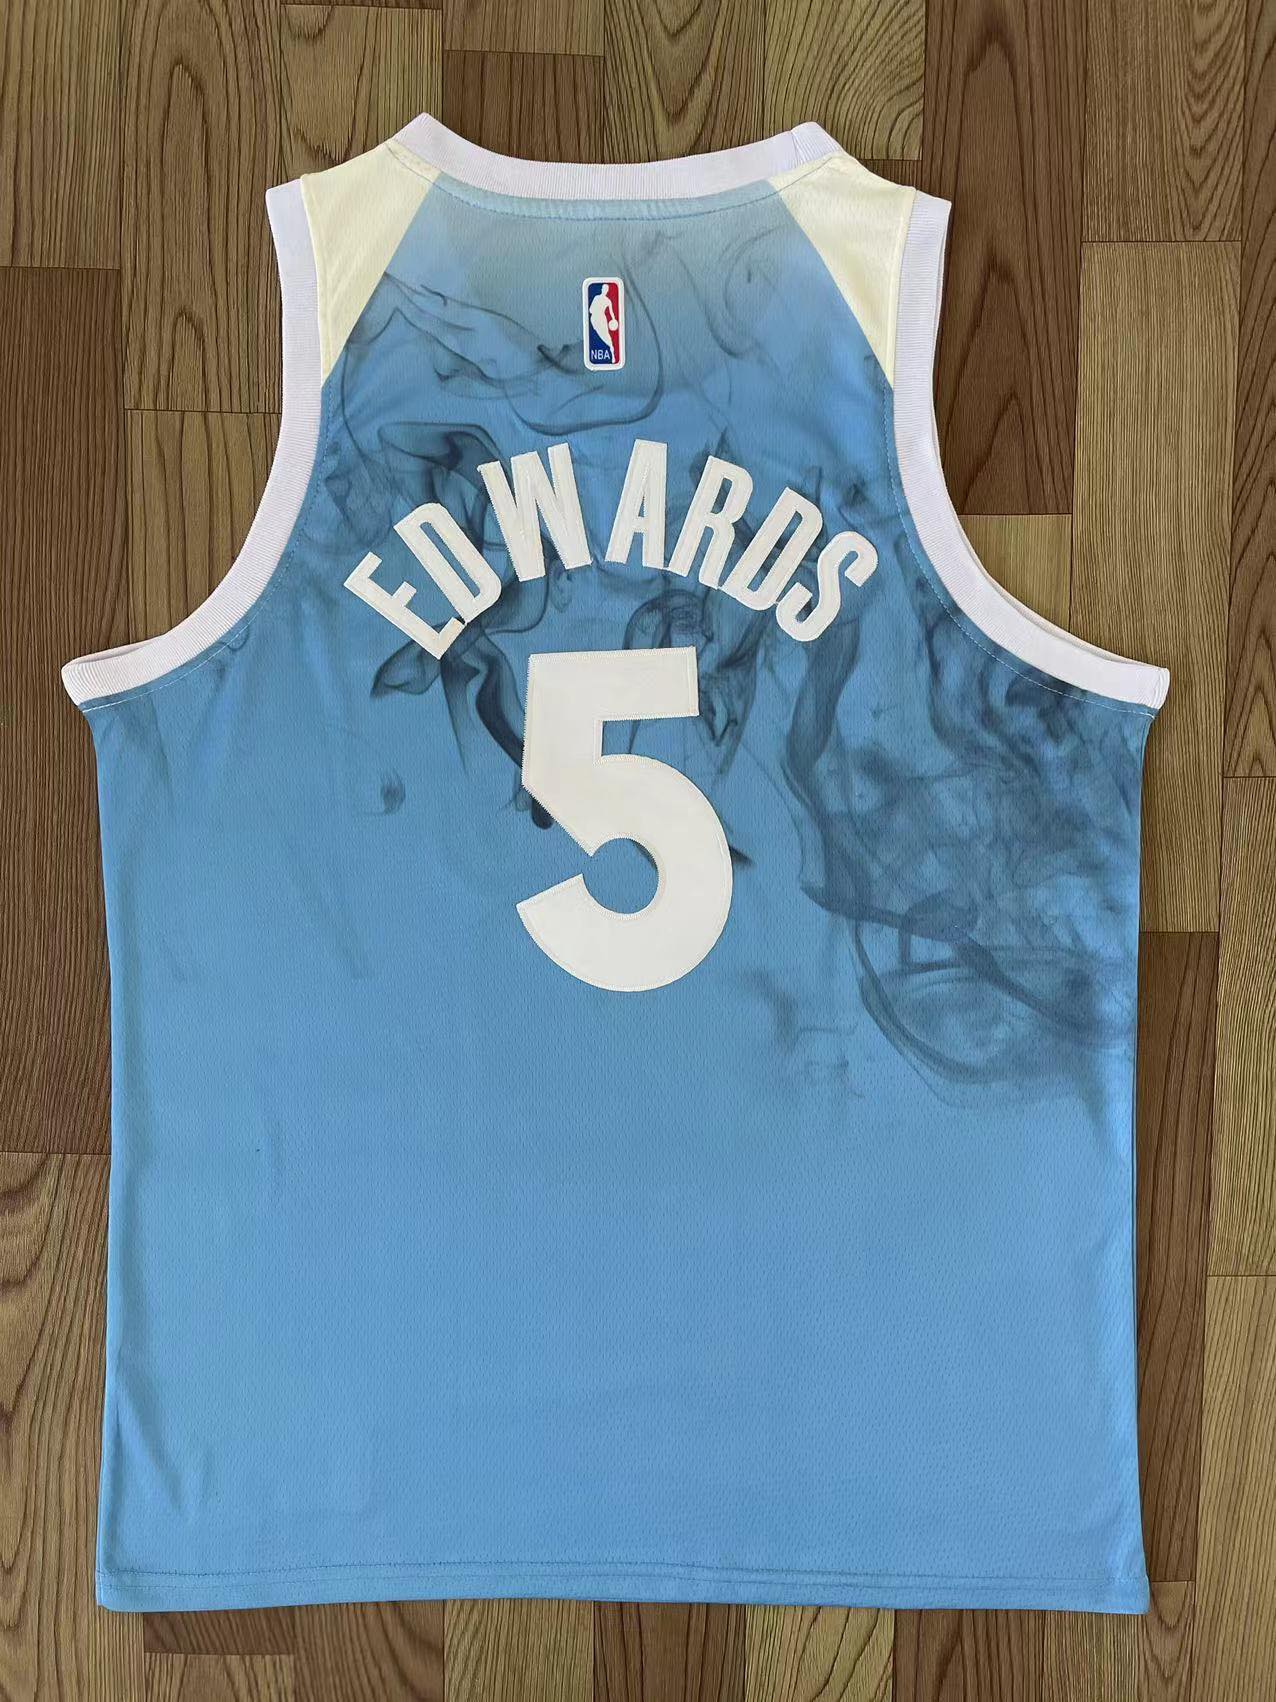 Anthony Edwards Minnesota Timberwolves Jersey